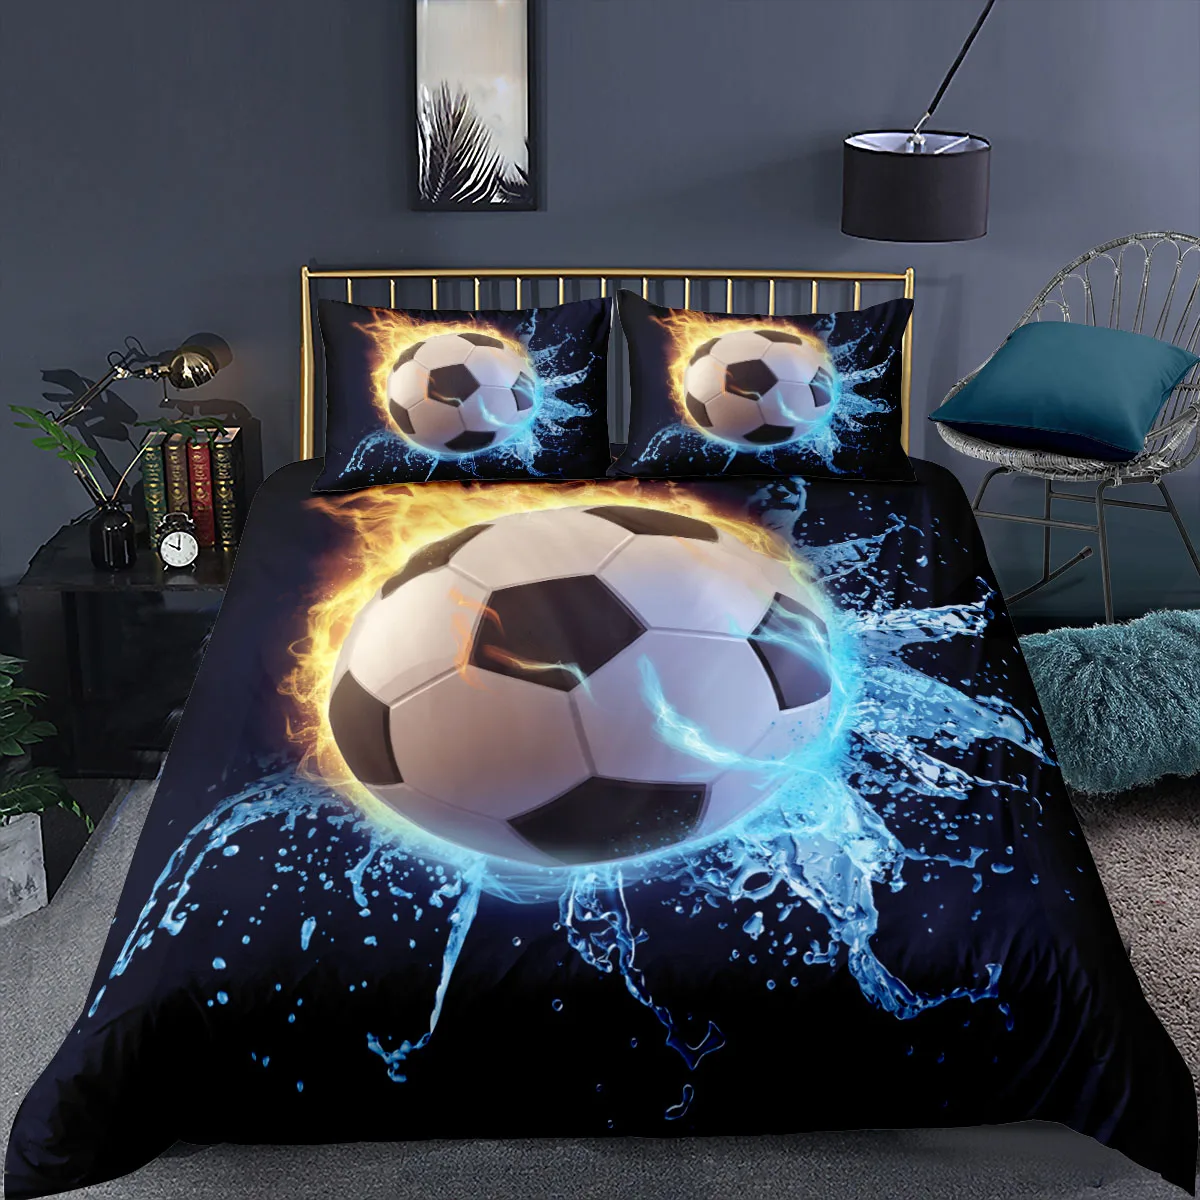 

3D Fußball Muster Bettwäsche Set Luxus Home Textilien 2/3 stücke Bettwäsche Königin/König Größe Bettbezug Kissenbezug